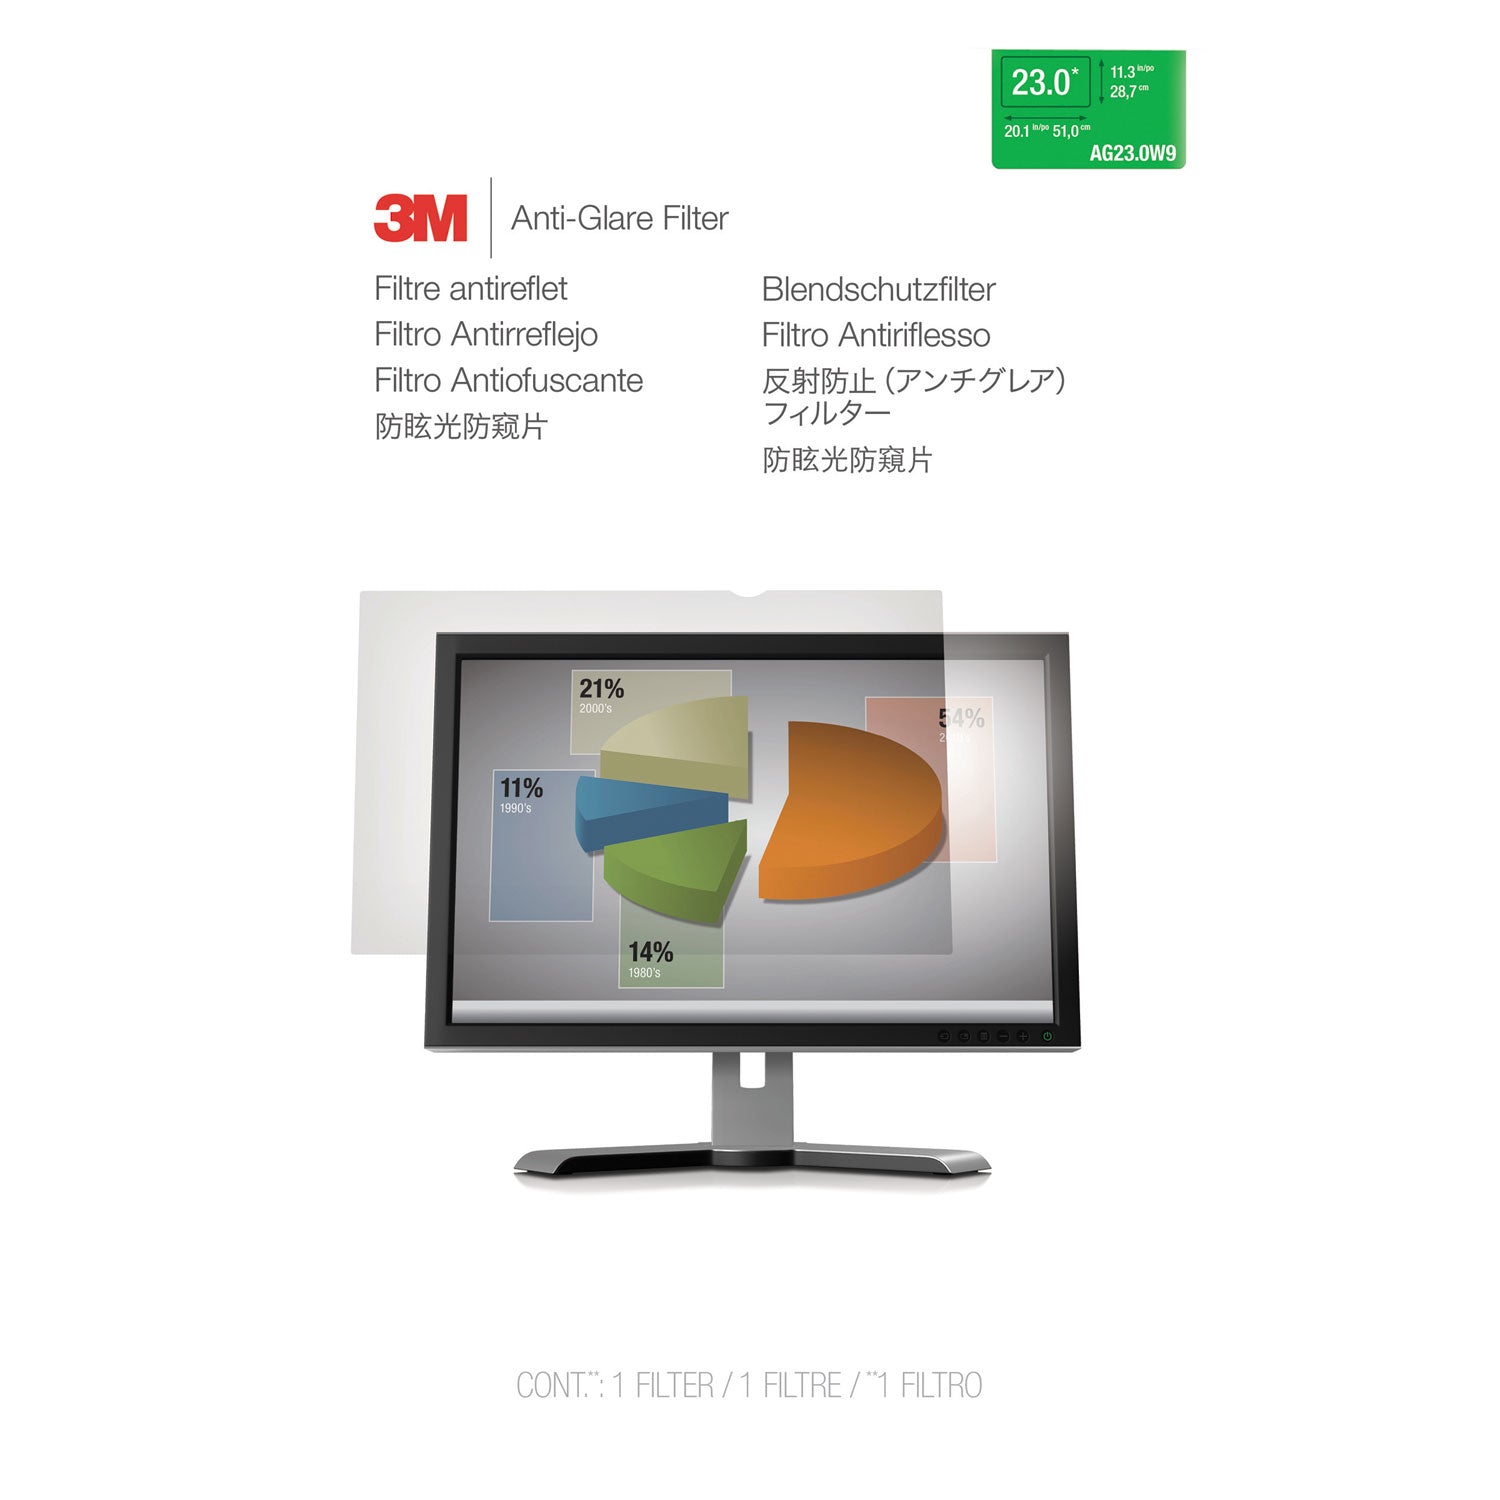 Antiglare Frameless Filter for 23" Widescreen Flat Panel Monitor, 16:9 Aspect Ratio - 